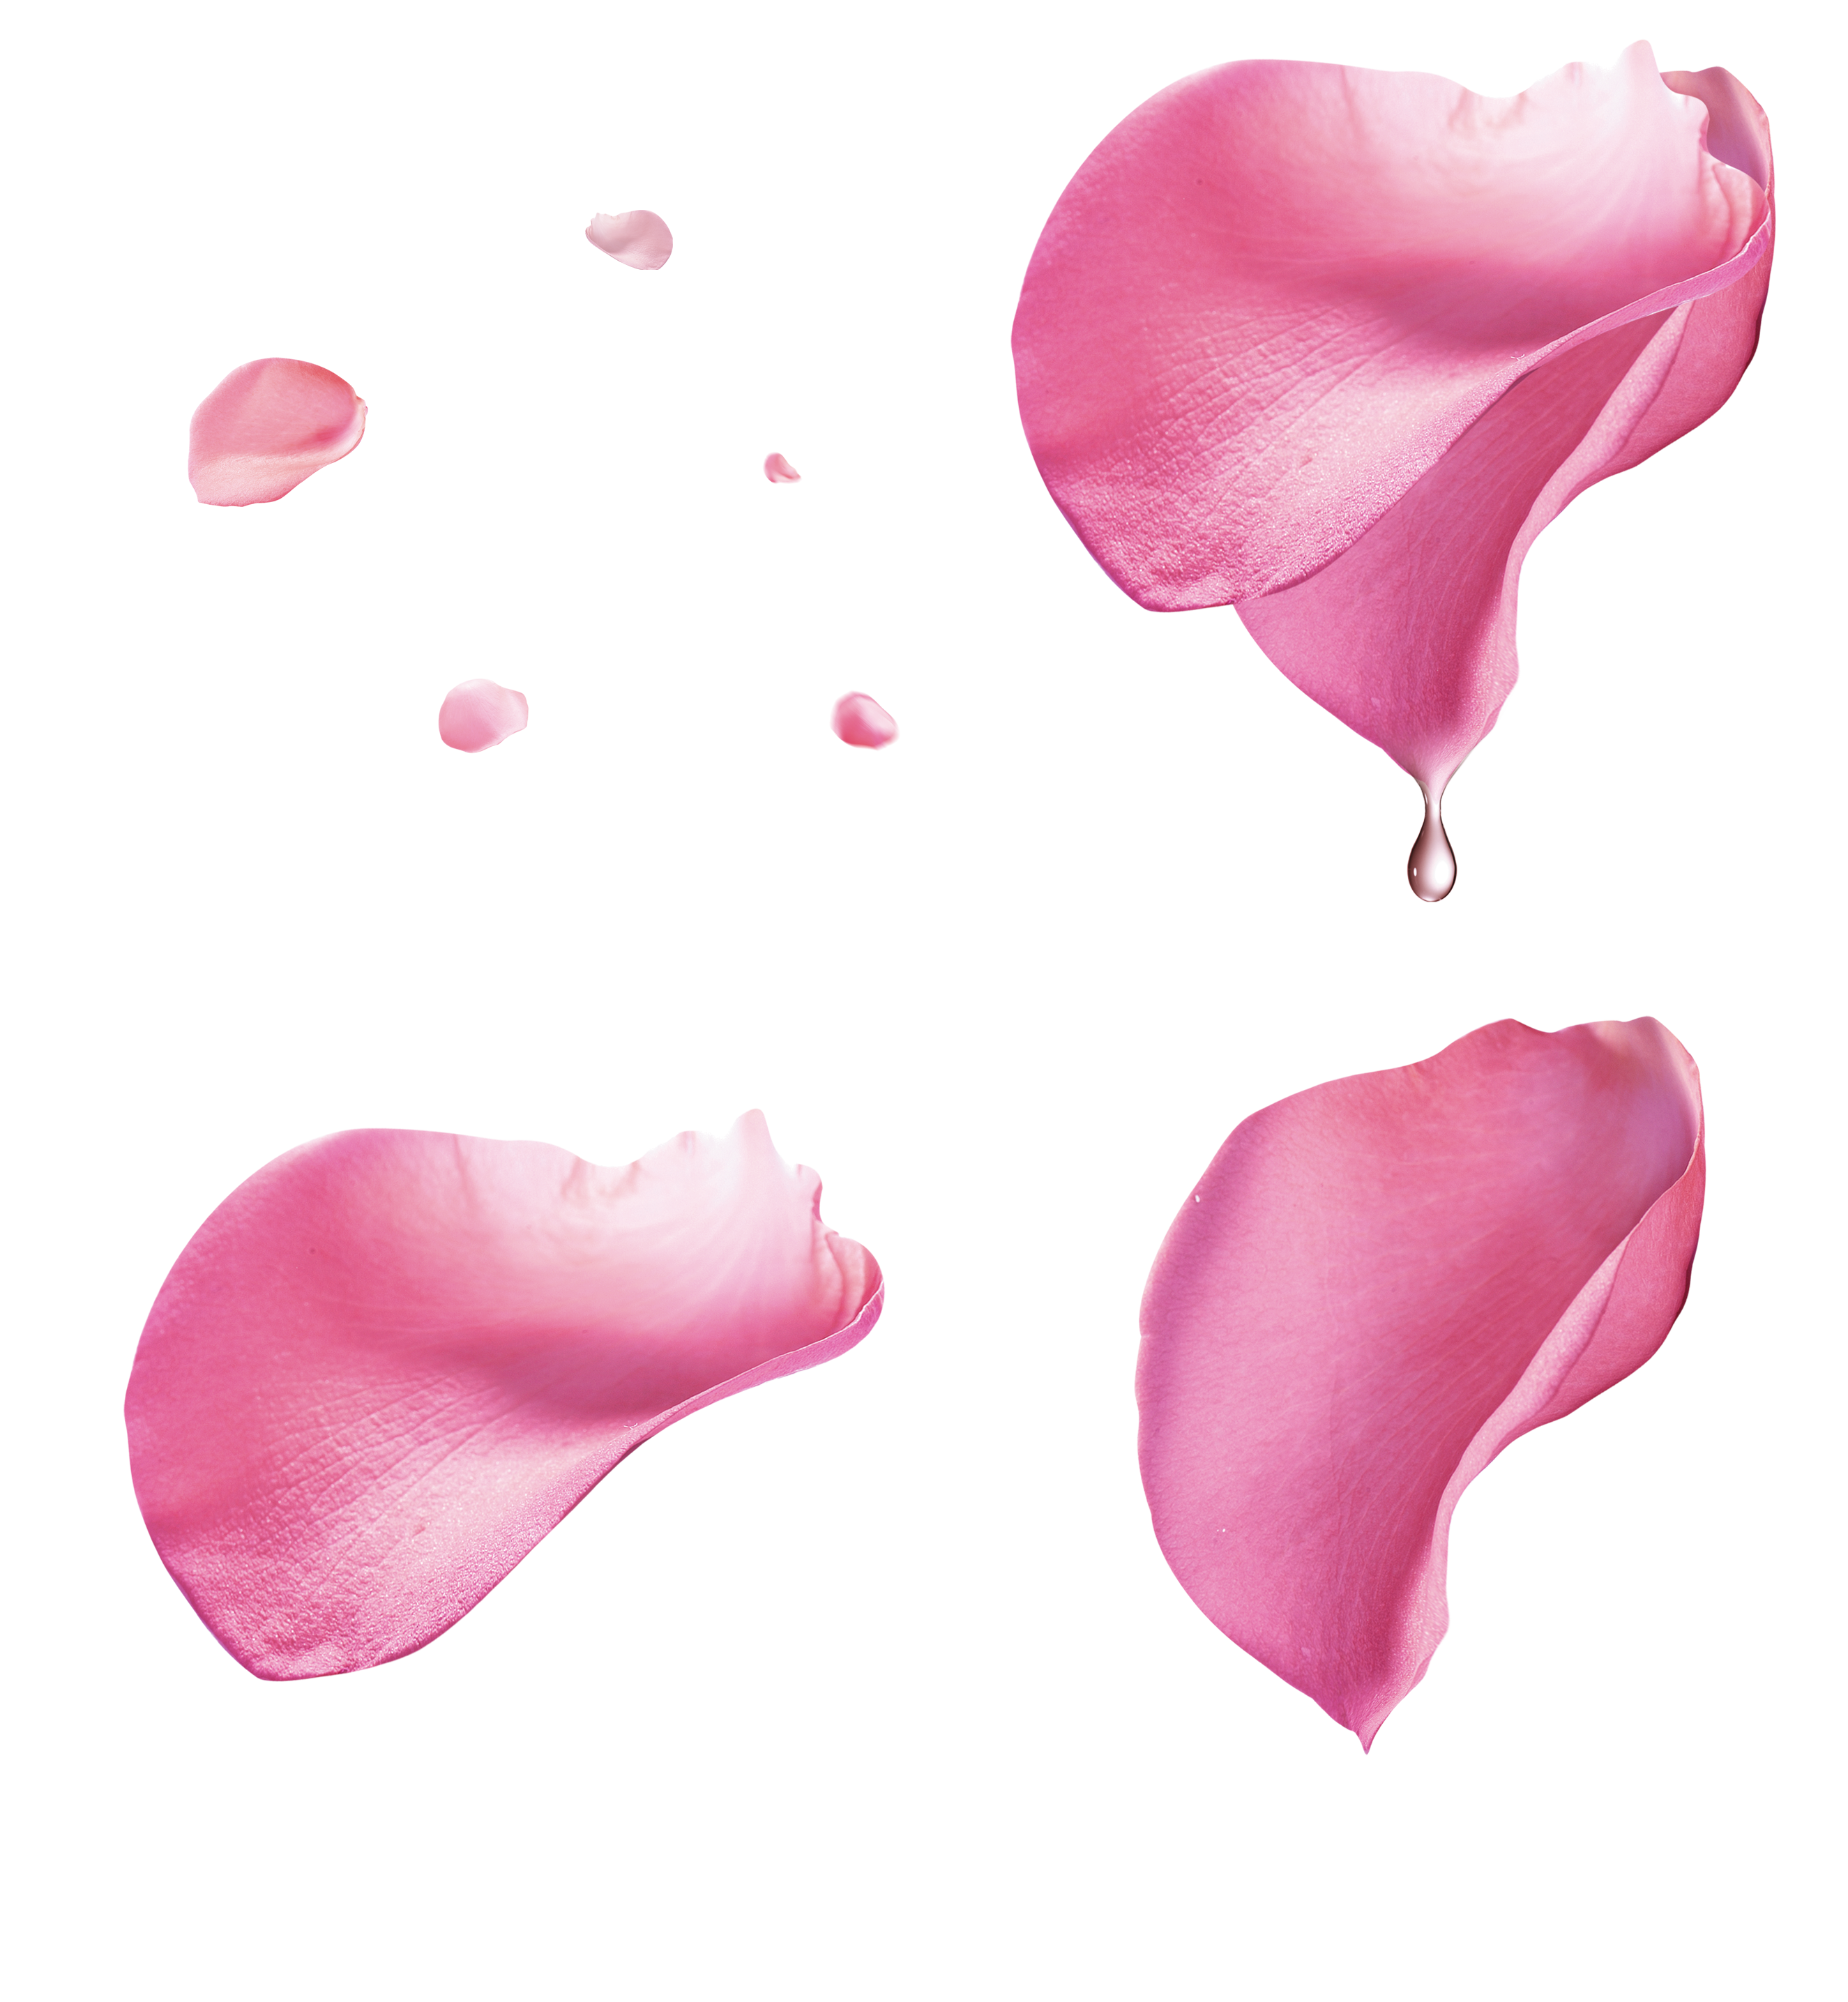 Rose Petal - Pink rose petal floating material 2650*2871 transprent ...